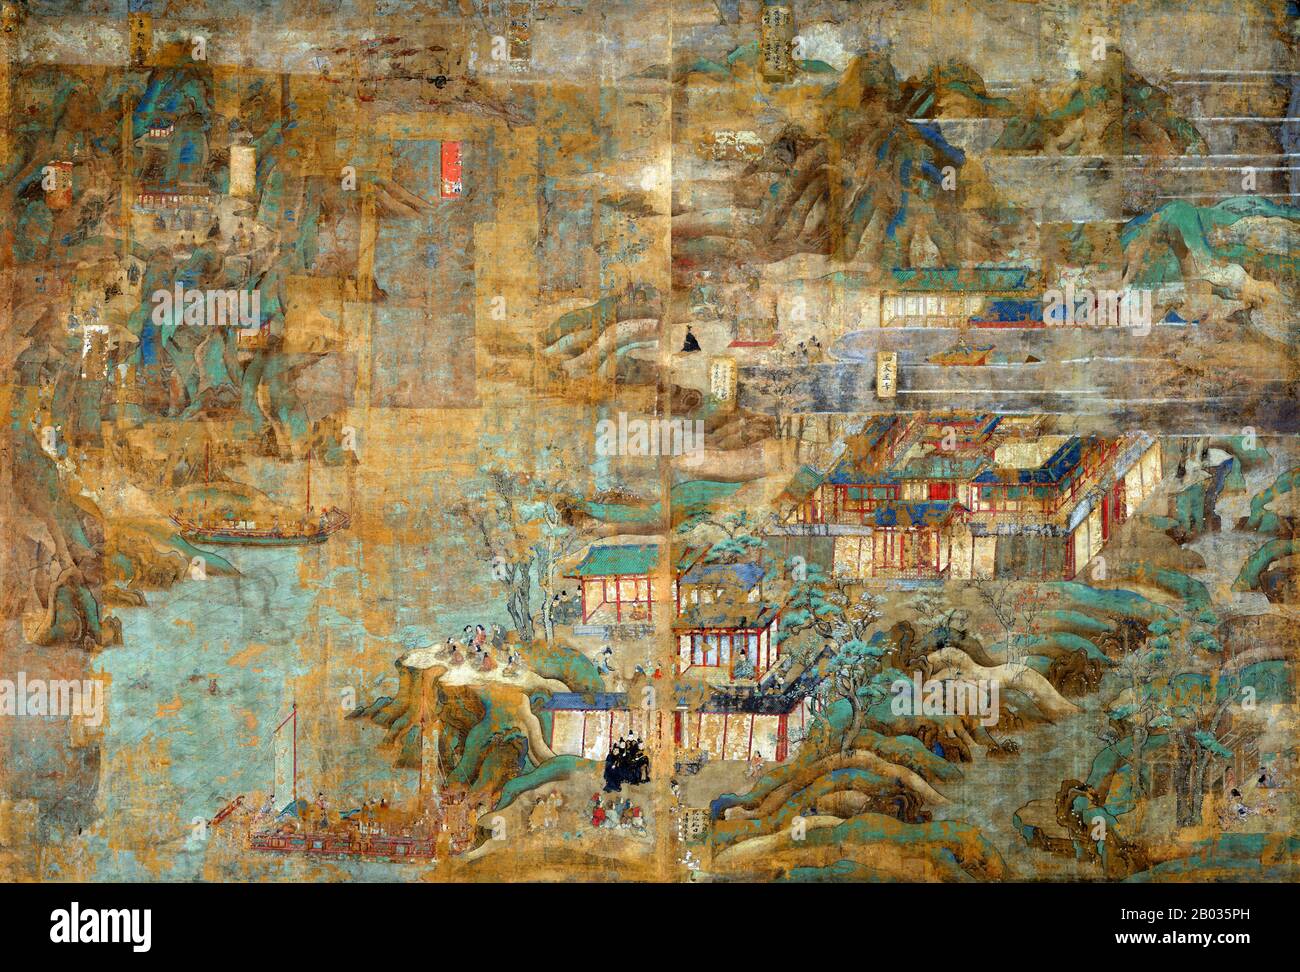 Este conjunto de pinturas es la biografía ilustrada más antigua y más grande del Príncipe Regente Shotoku (574-622). Muestra lugares y acontecimientos relacionados con el relato tradicional de su vida, que se derivan de la veneración del príncipe que comenzó en el período Nara (710-794). Estas pinturas estaban originalmente en puertas fijas que adornaban el Salón de Fotos en el recinto este del Templo Horyu-ji. Fueron remontados como pantallas independientes en el período Edo (1615-1868), y en tiempos recientes fueron remontados en diez paneles. Los discos nos dicen que Hata no Chitei, un artista de la provincia de Settsu (presen Foto de stock